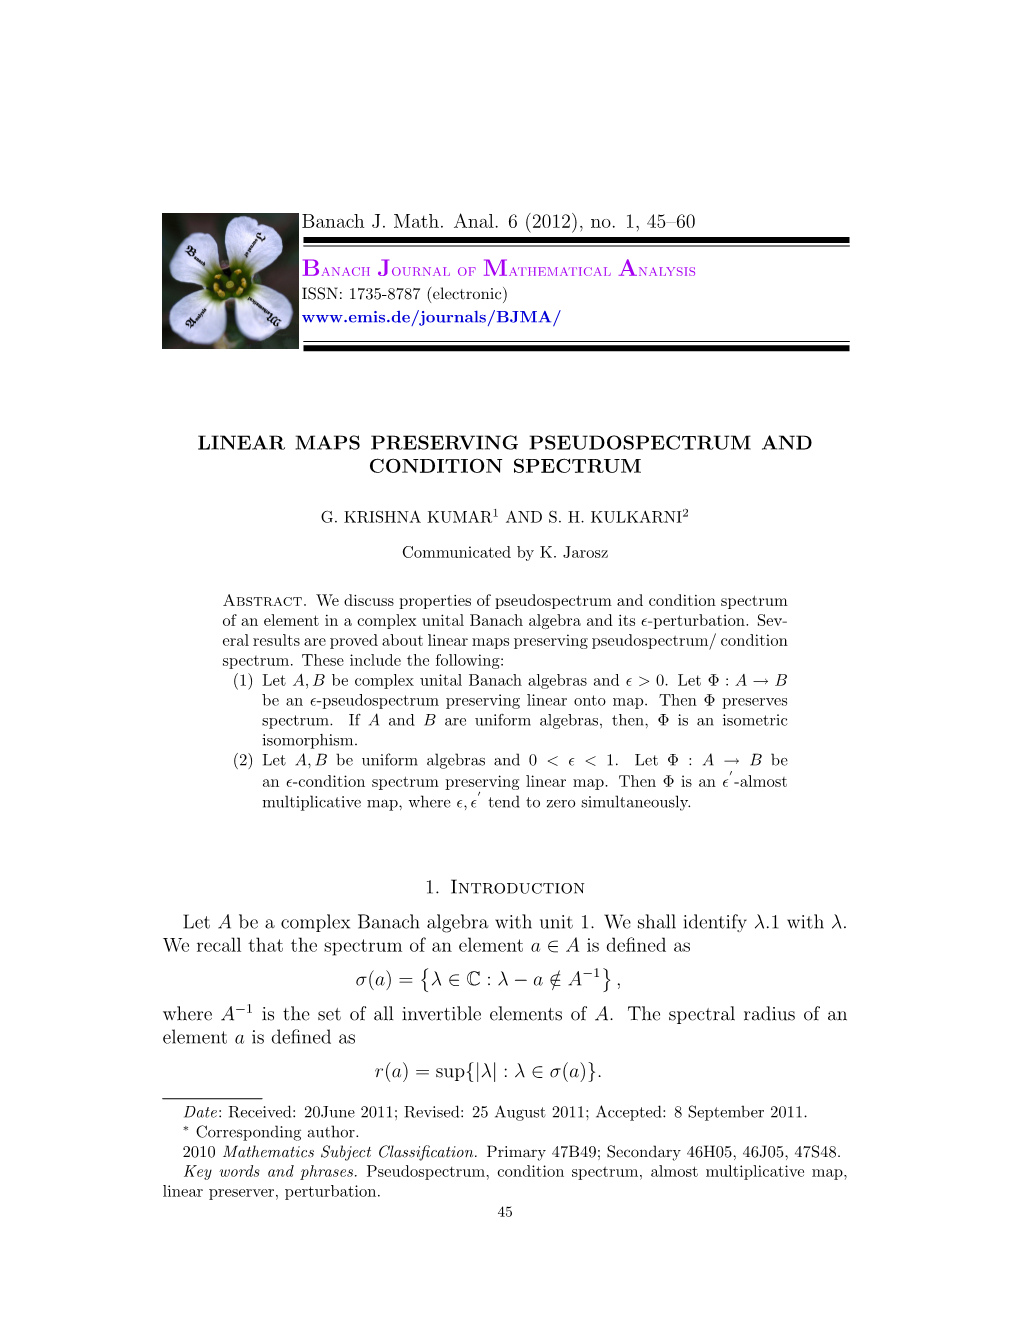 Banach J. Math. Anal. 6 (2012), No. 1, 45–60 LINEAR MAPS